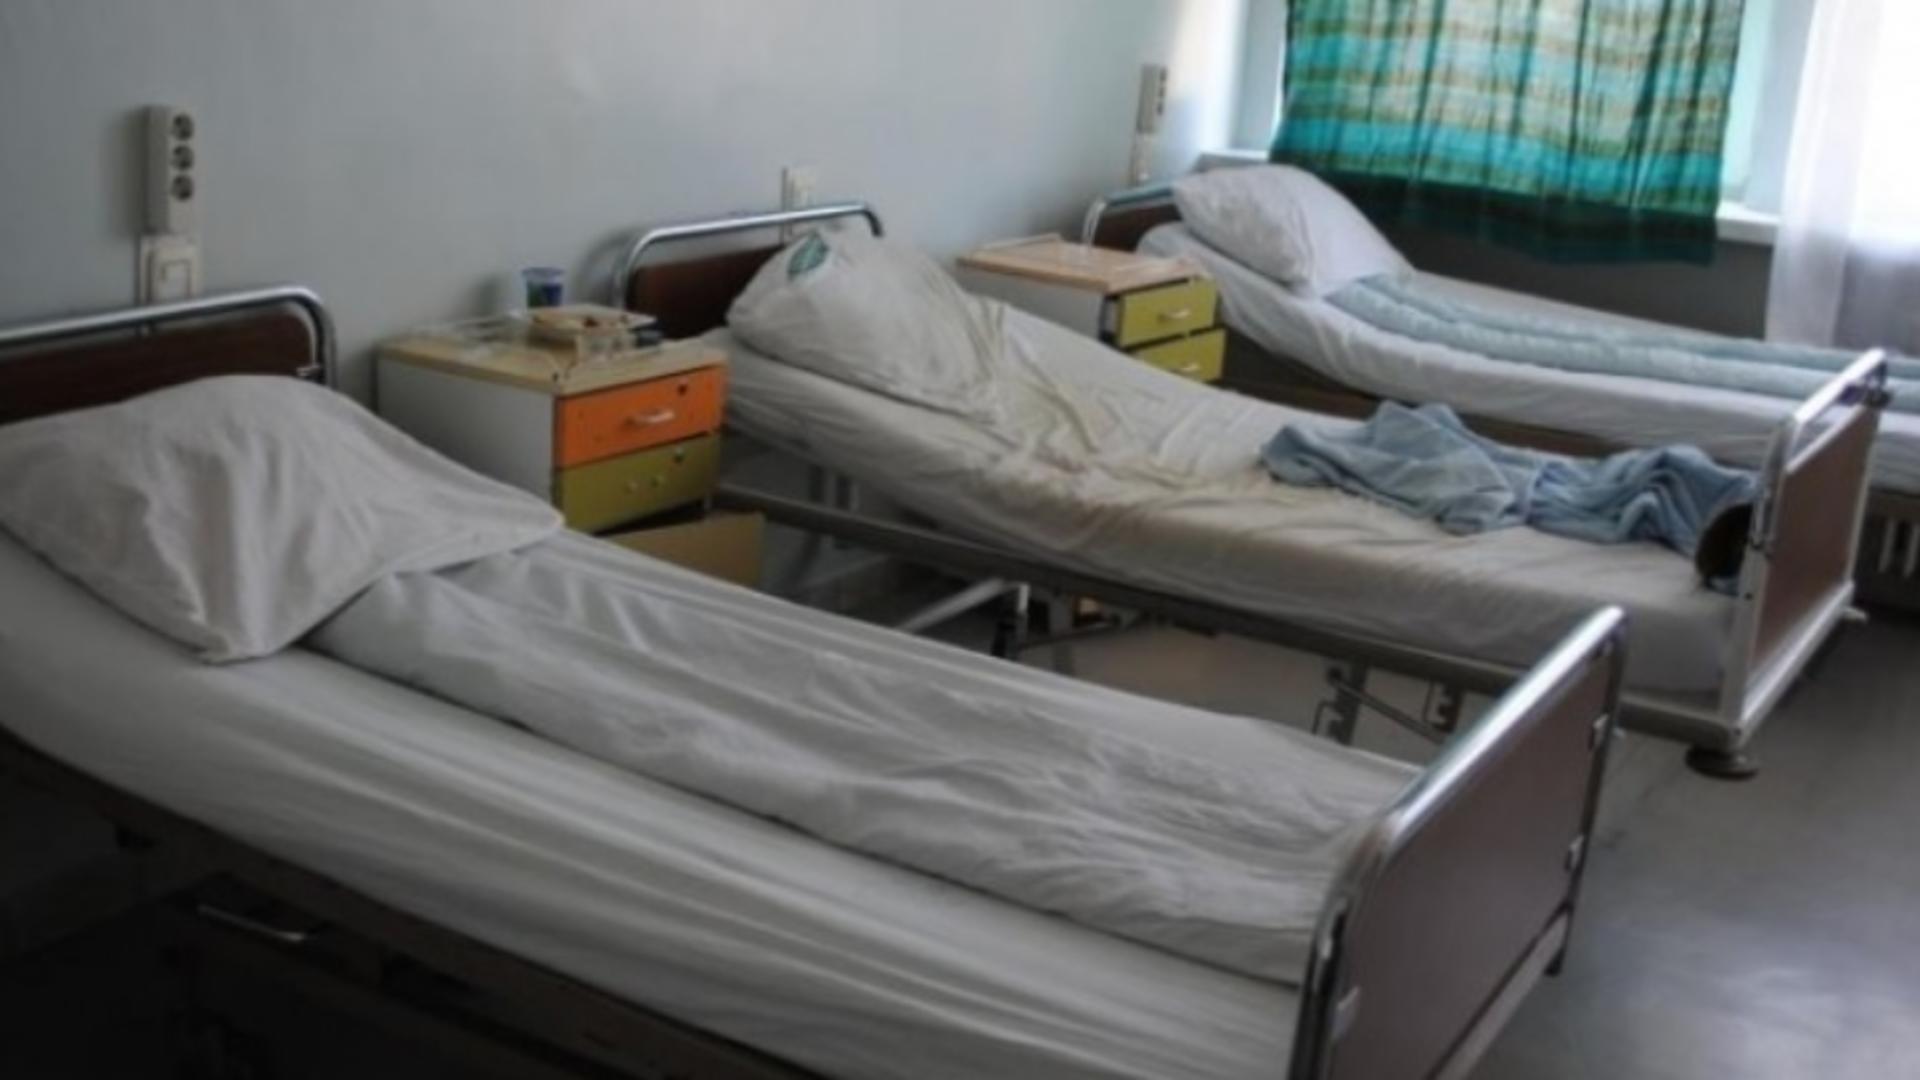 Spitalul Judeţean Târgu-Jiu a rămas fără curent electric, în urma unei avarii